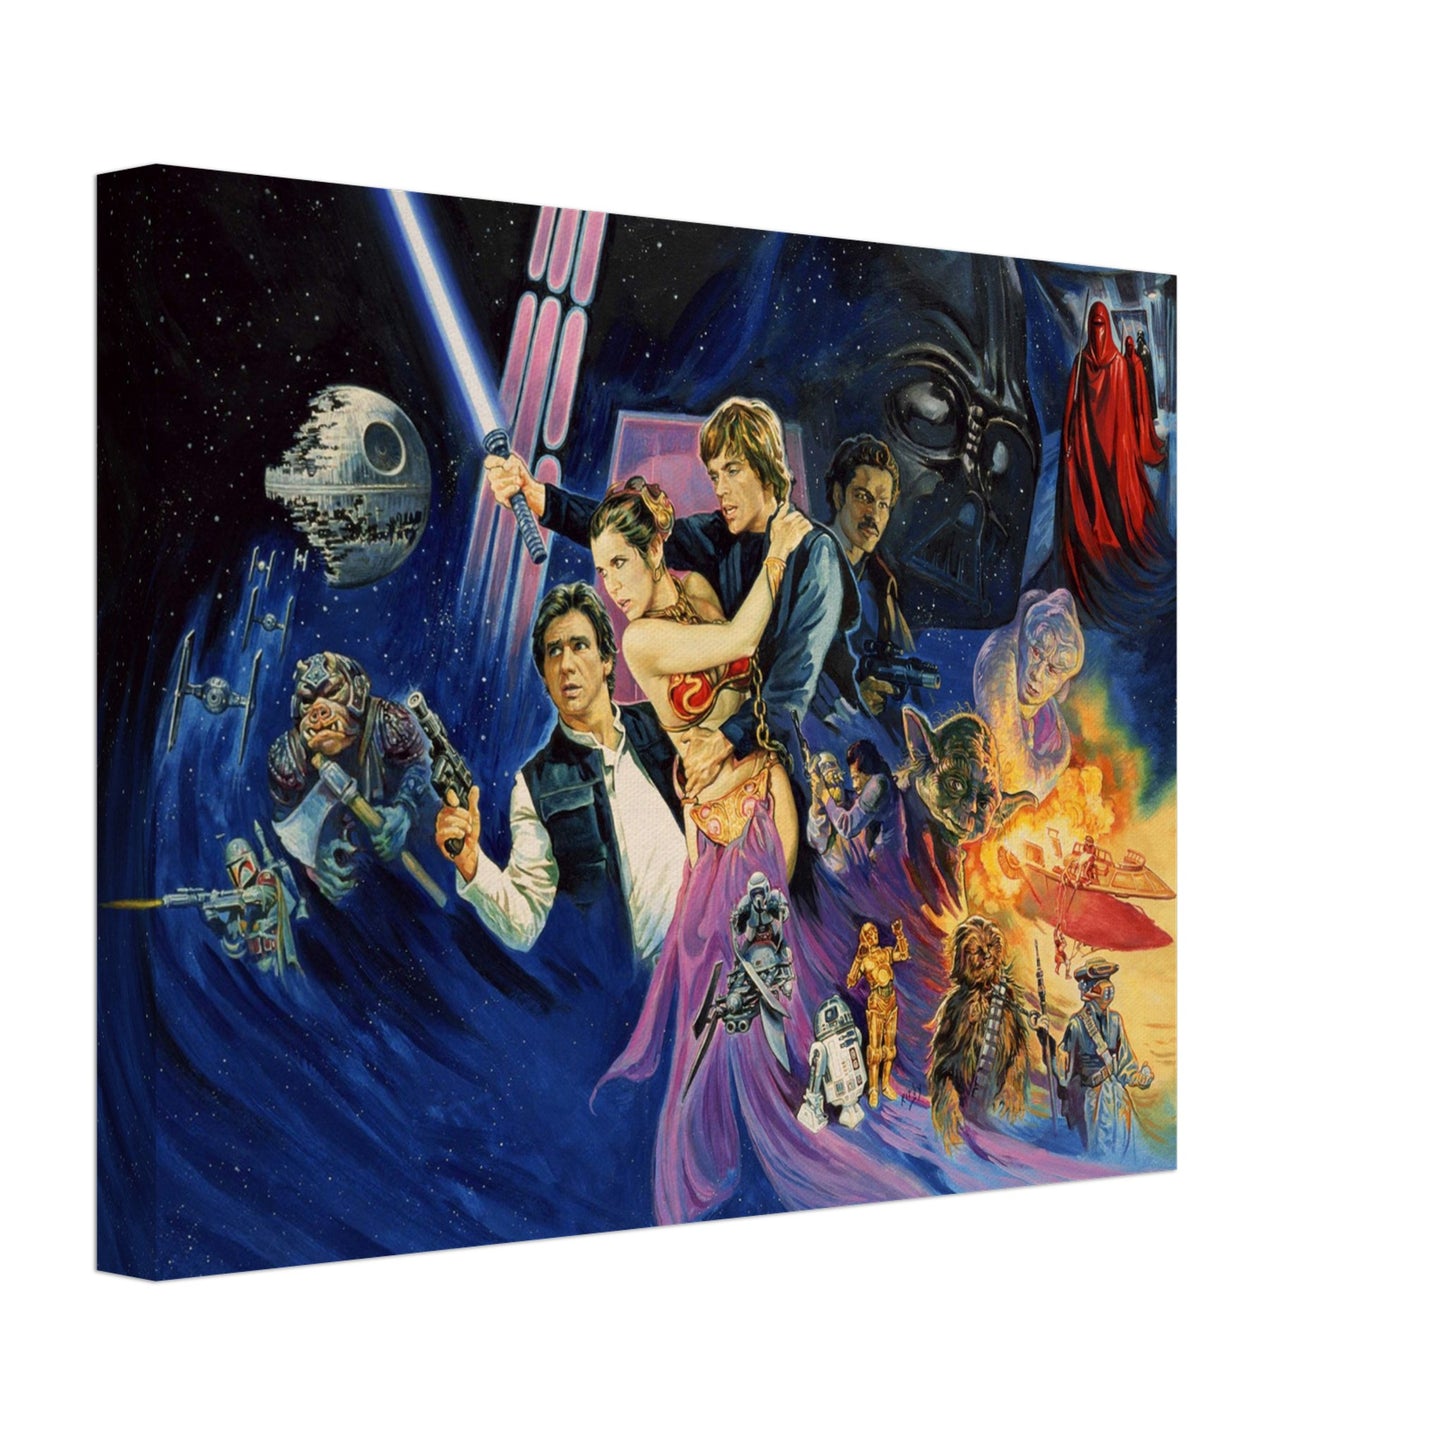 Star Wars - Return of the Jedi Canvas Print